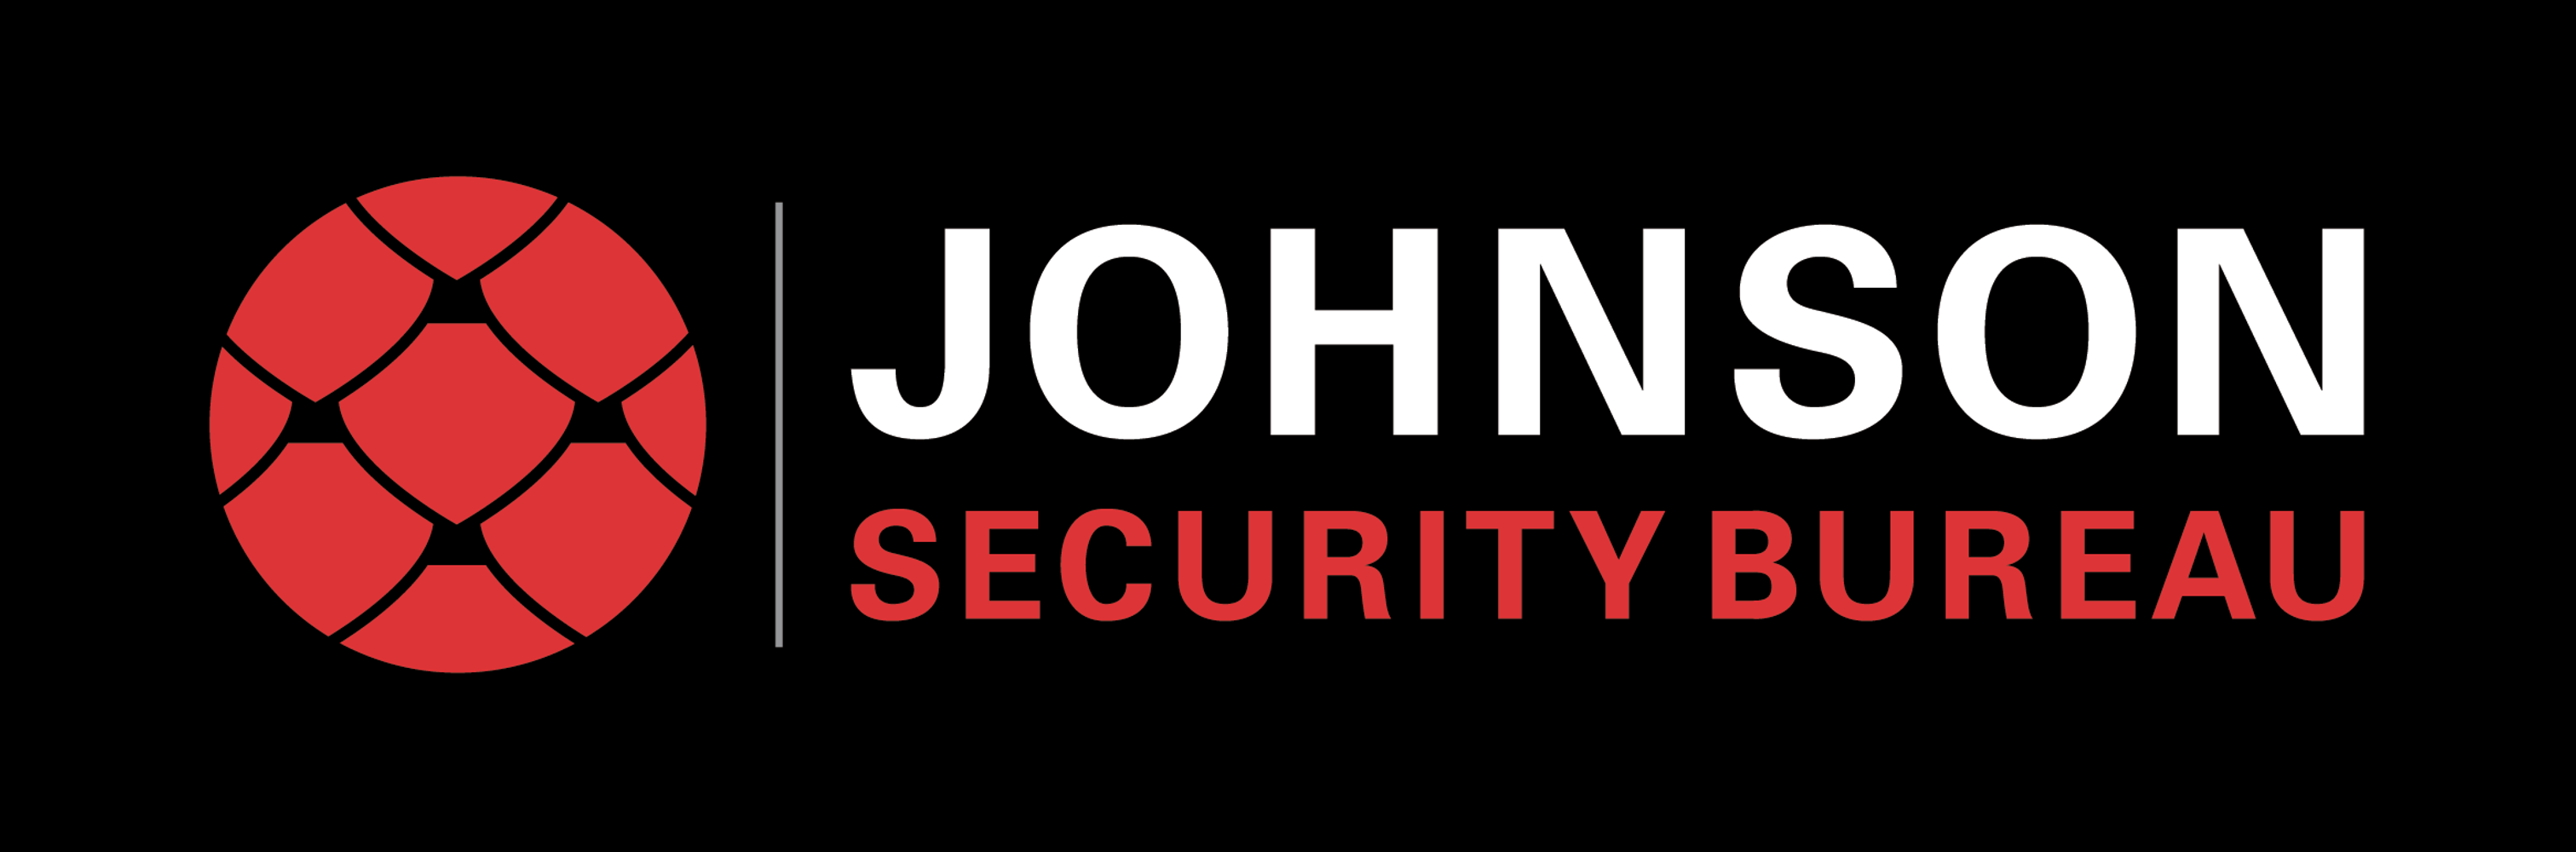 Johnson Security Bureau, Inc. Project 1